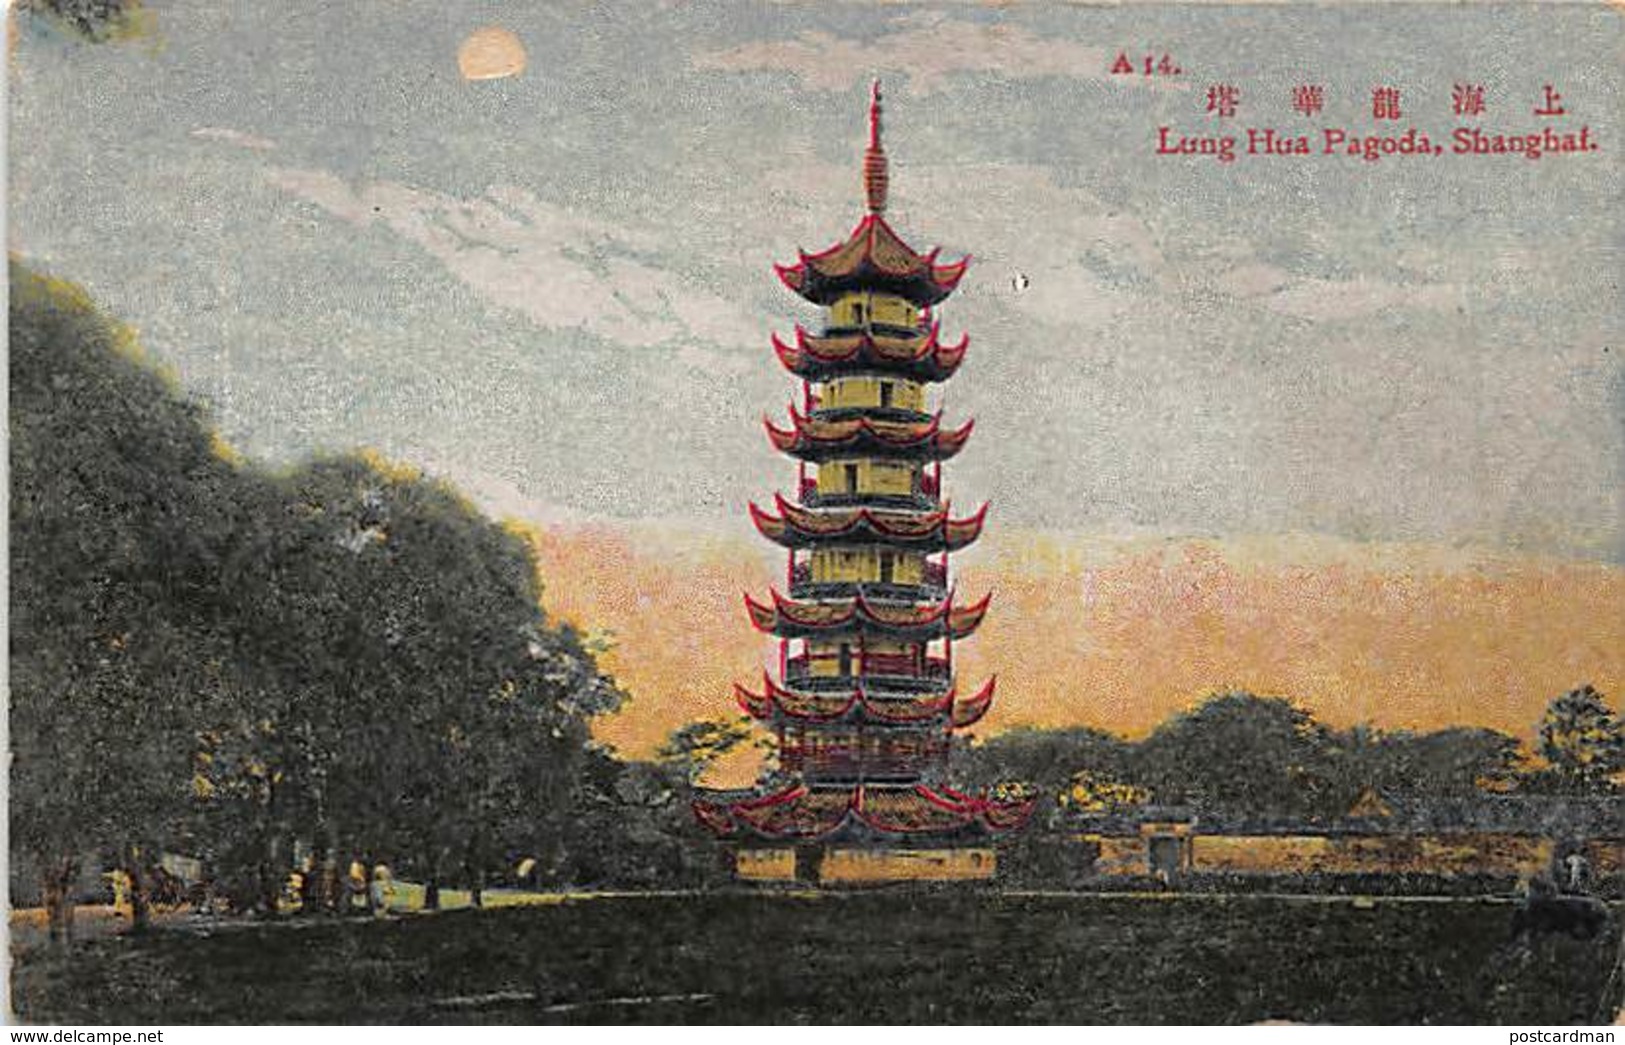 China - SHANGHAI - Lung Hua Pagoda - Publ. Commercial Press Ltd. - China